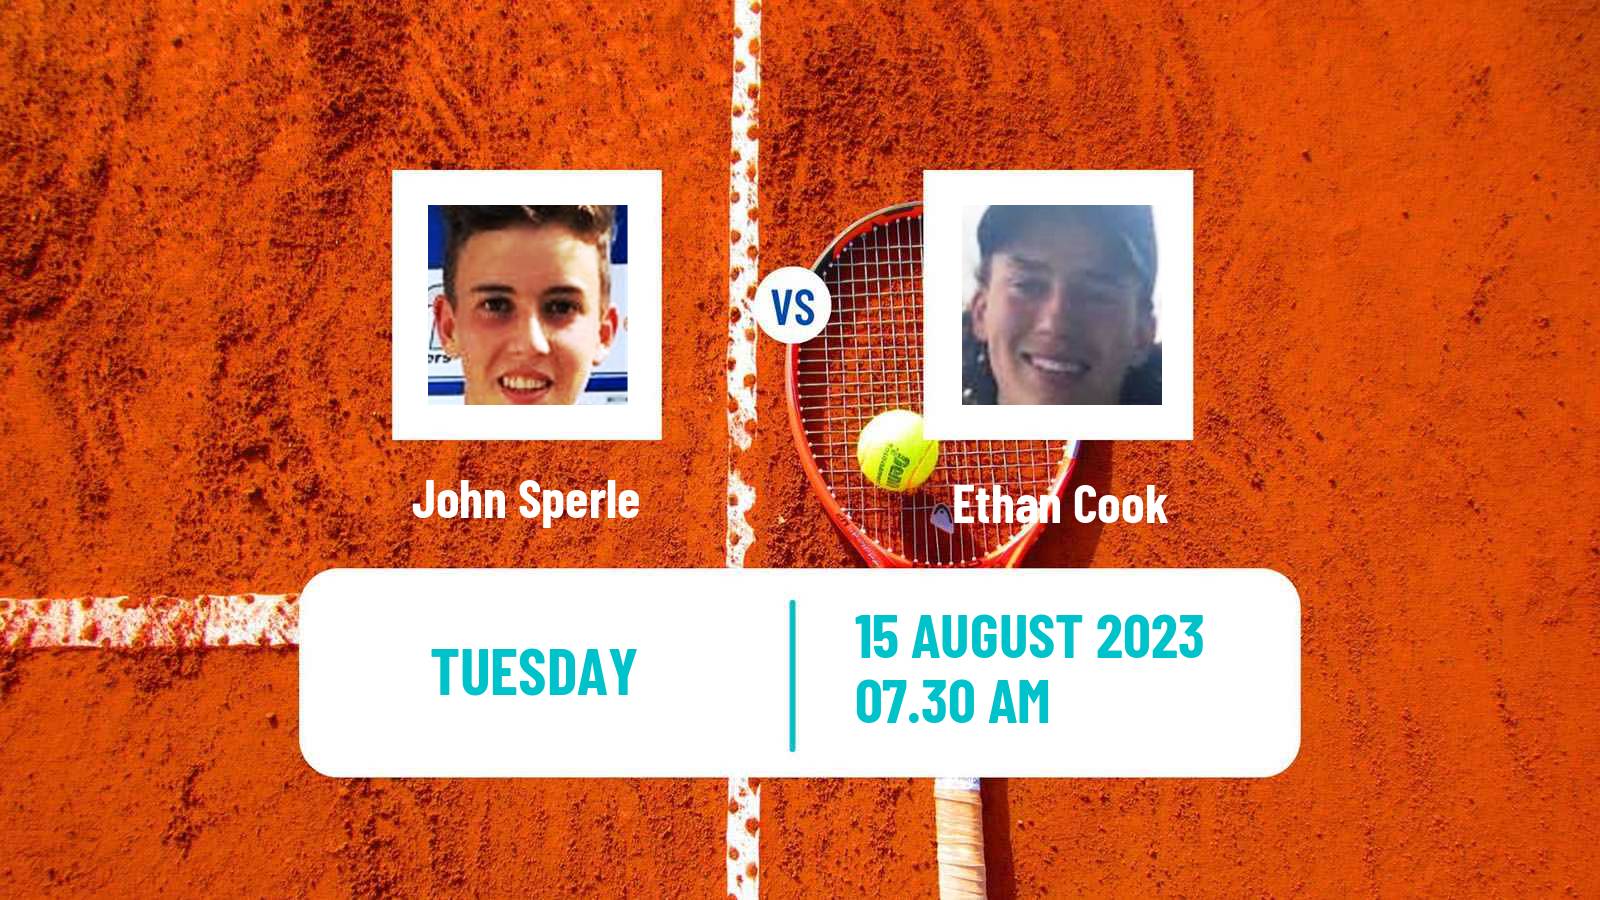 Tennis ITF M25 Ystad Men John Sperle - Ethan Cook